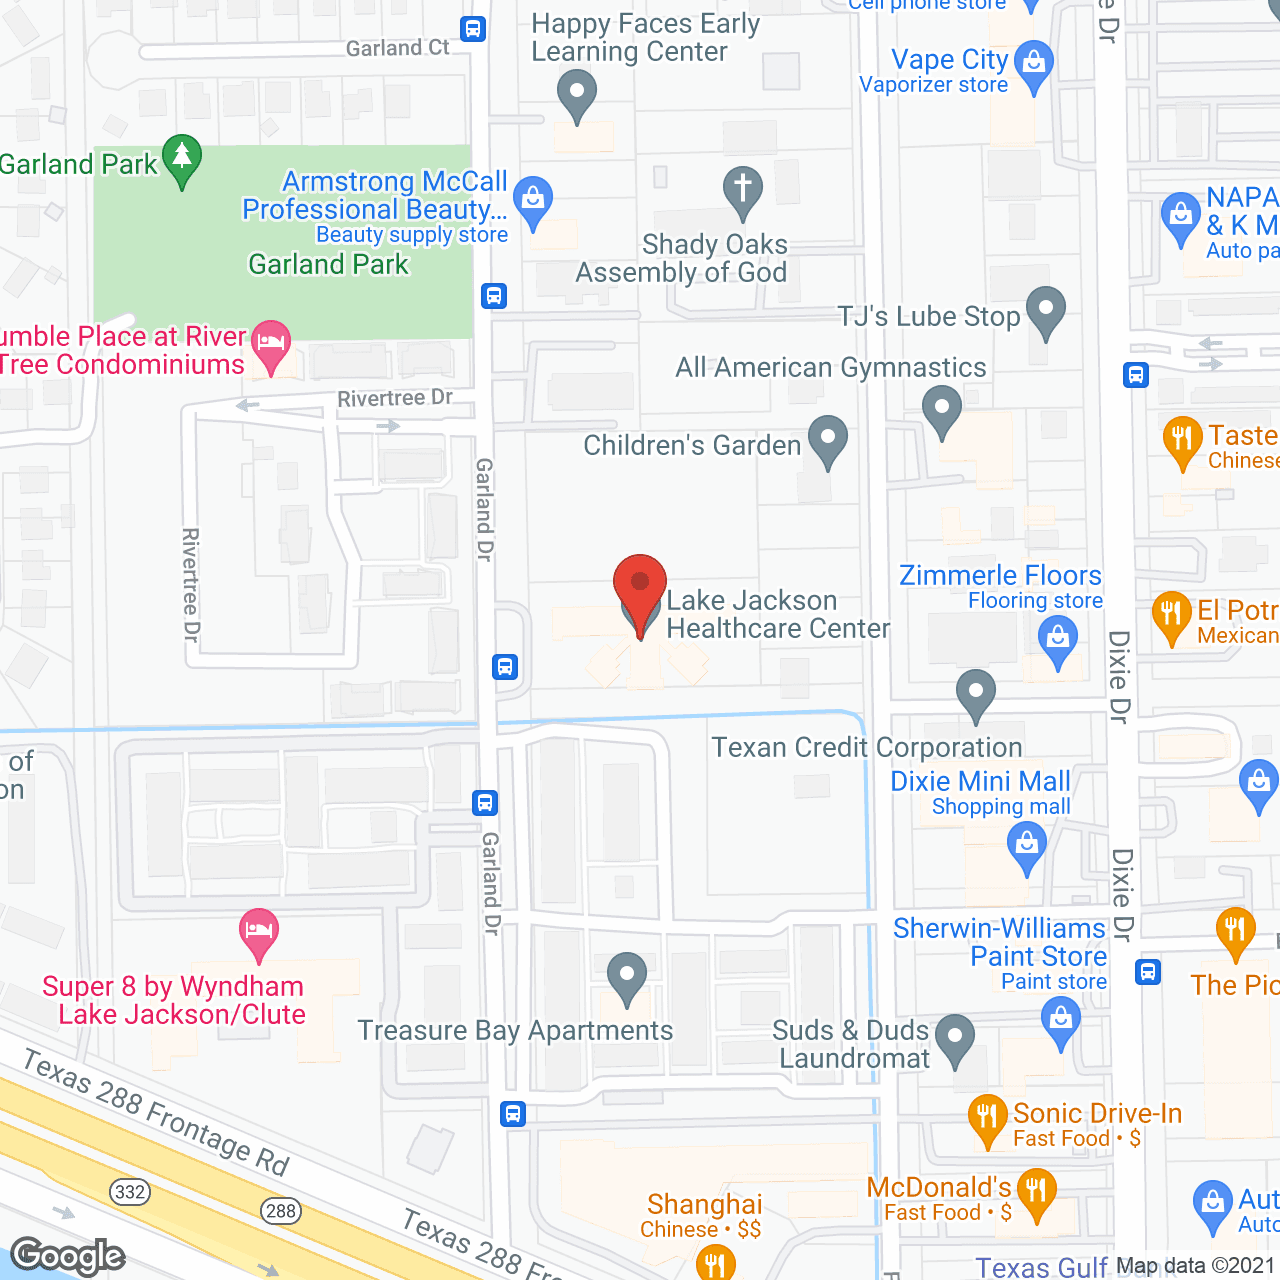 Lake Jackson Nursing Home Inc in google map